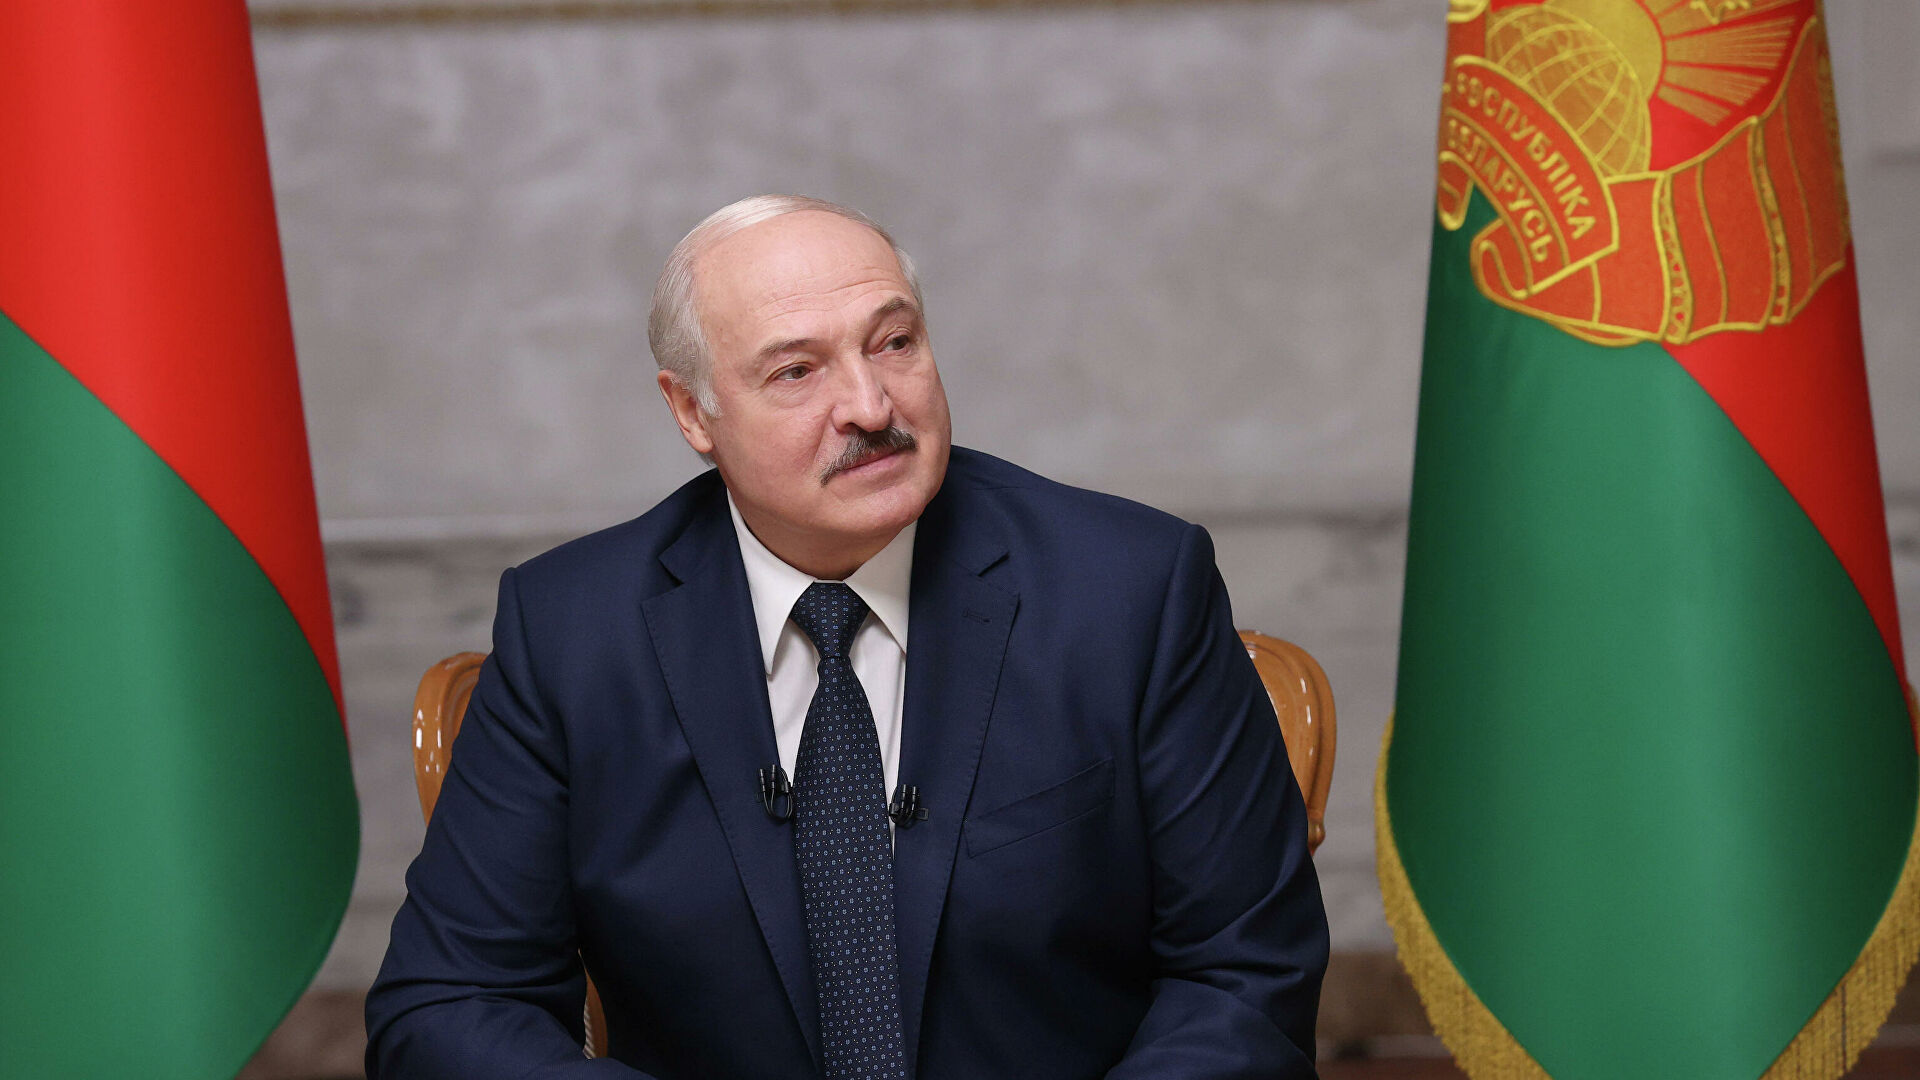 ЕС согласовал санкции против 29 белорусских чиновников и 7 связанных с властями Беларуси компаний